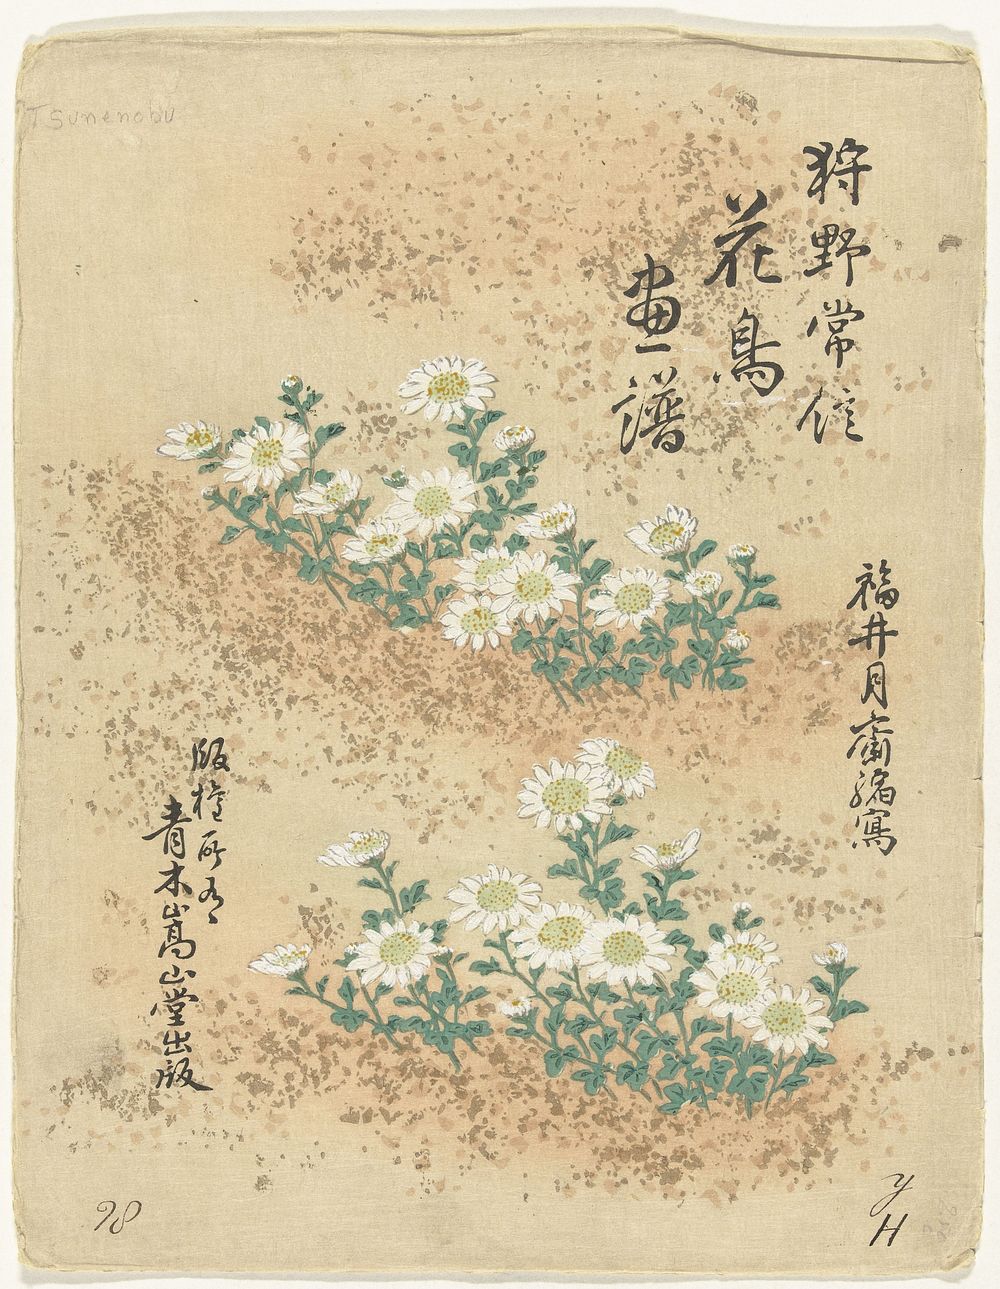 Inhoudsopgave (1893) by Kano Tsunenobu, Aoki Kôsaburô and Aoki Kôsaburô